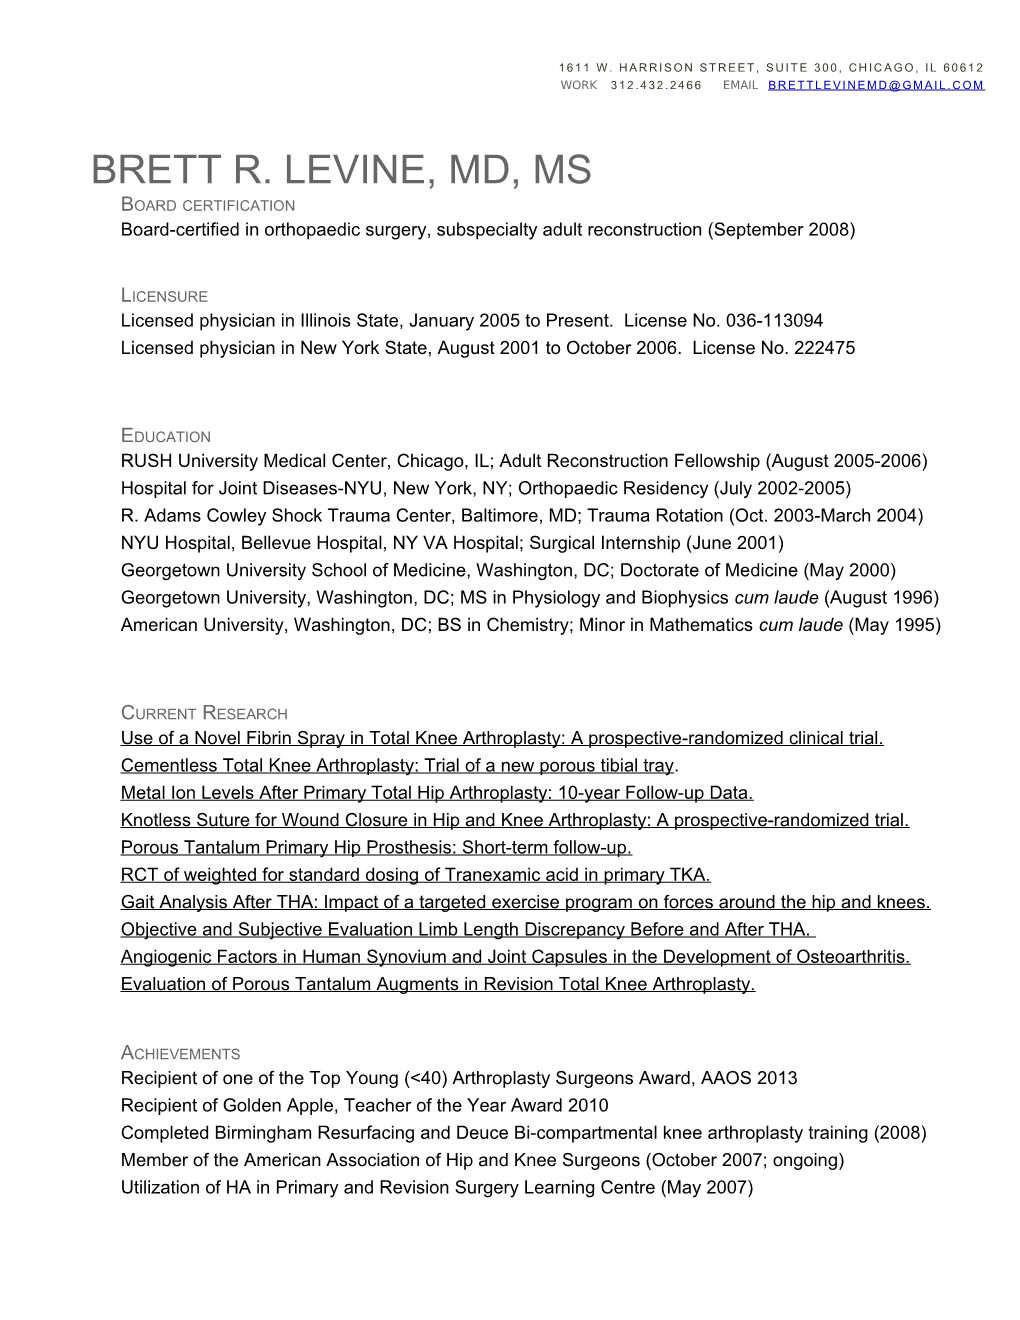 Brett R. Levine, MD, MS